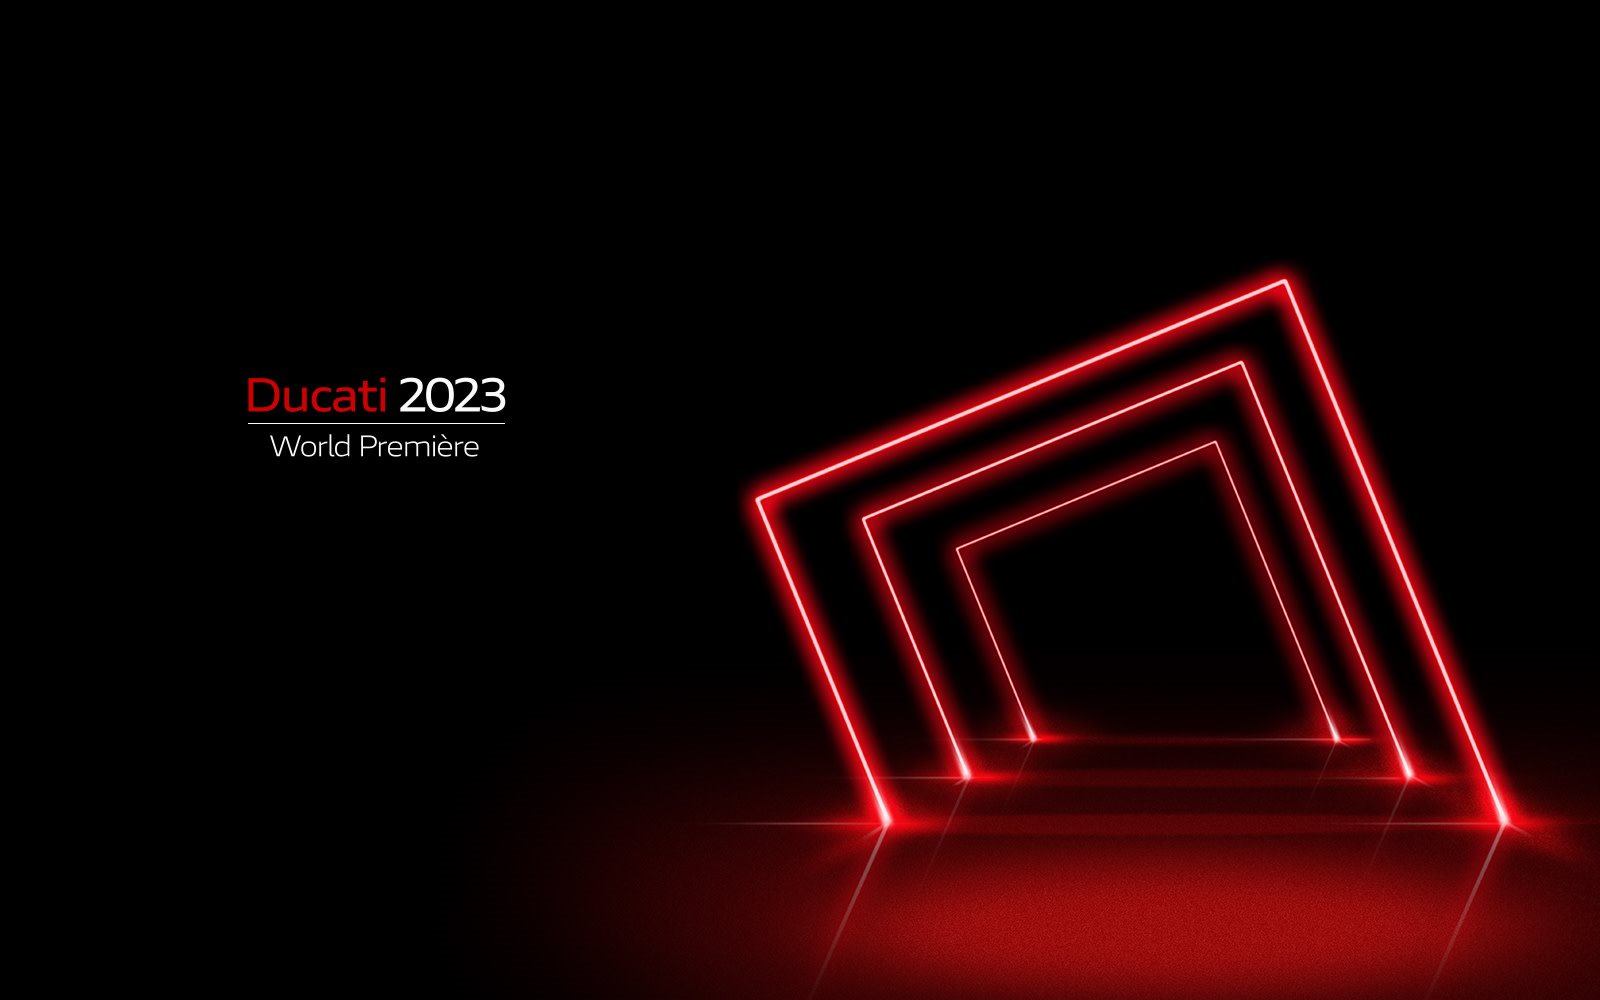 Las presentaciones de las novedades Ducati comenzarán a partir del 2 de septiembre de 2022